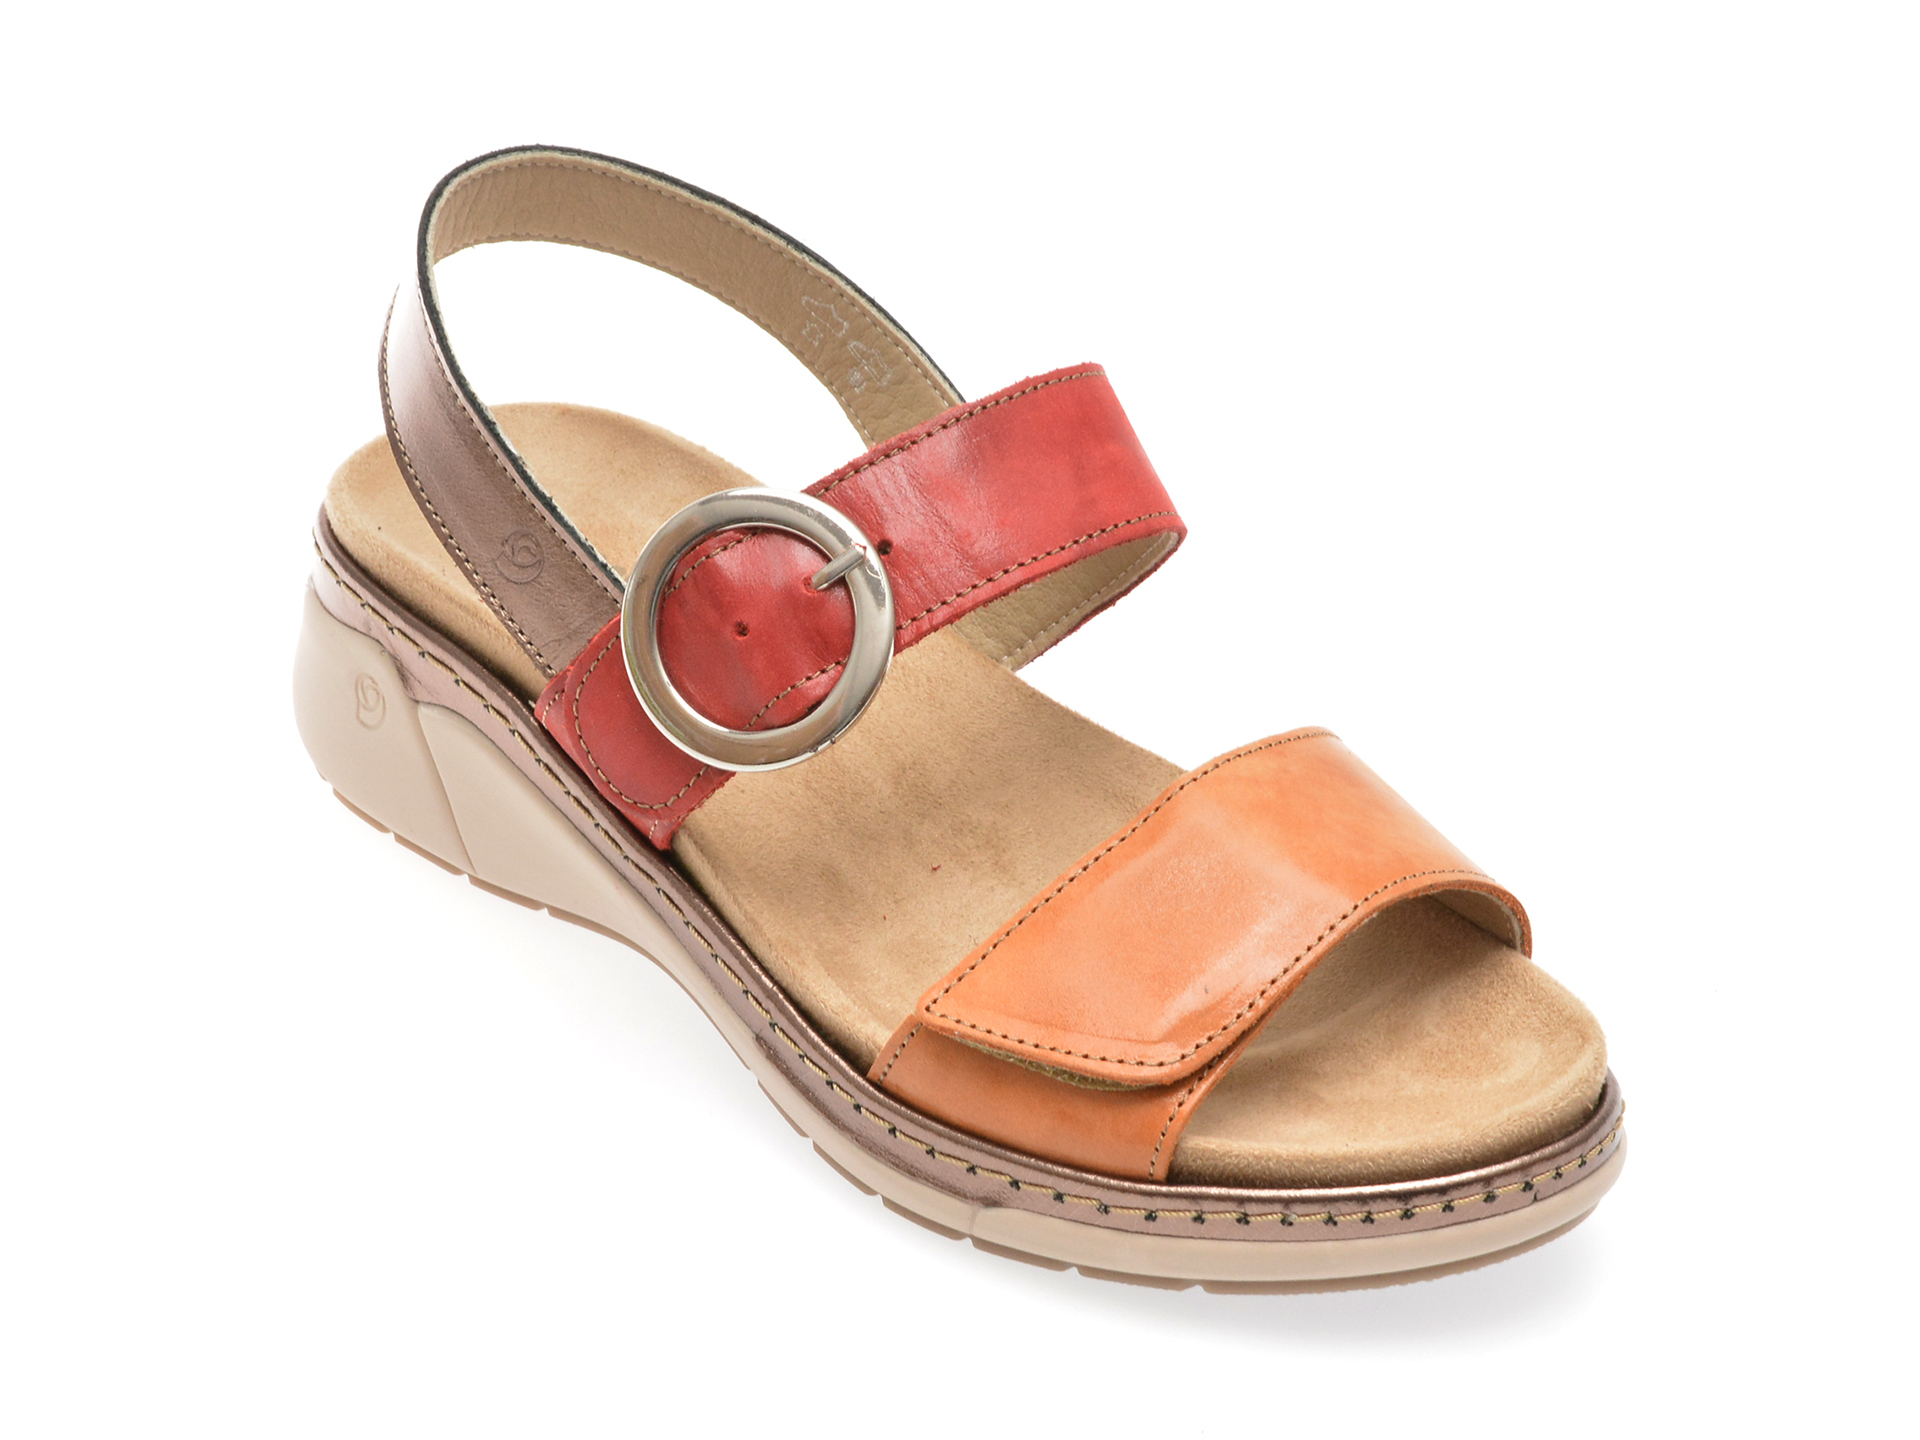 Sandale casual SUAVE multicolor, 18004, din piele naturala